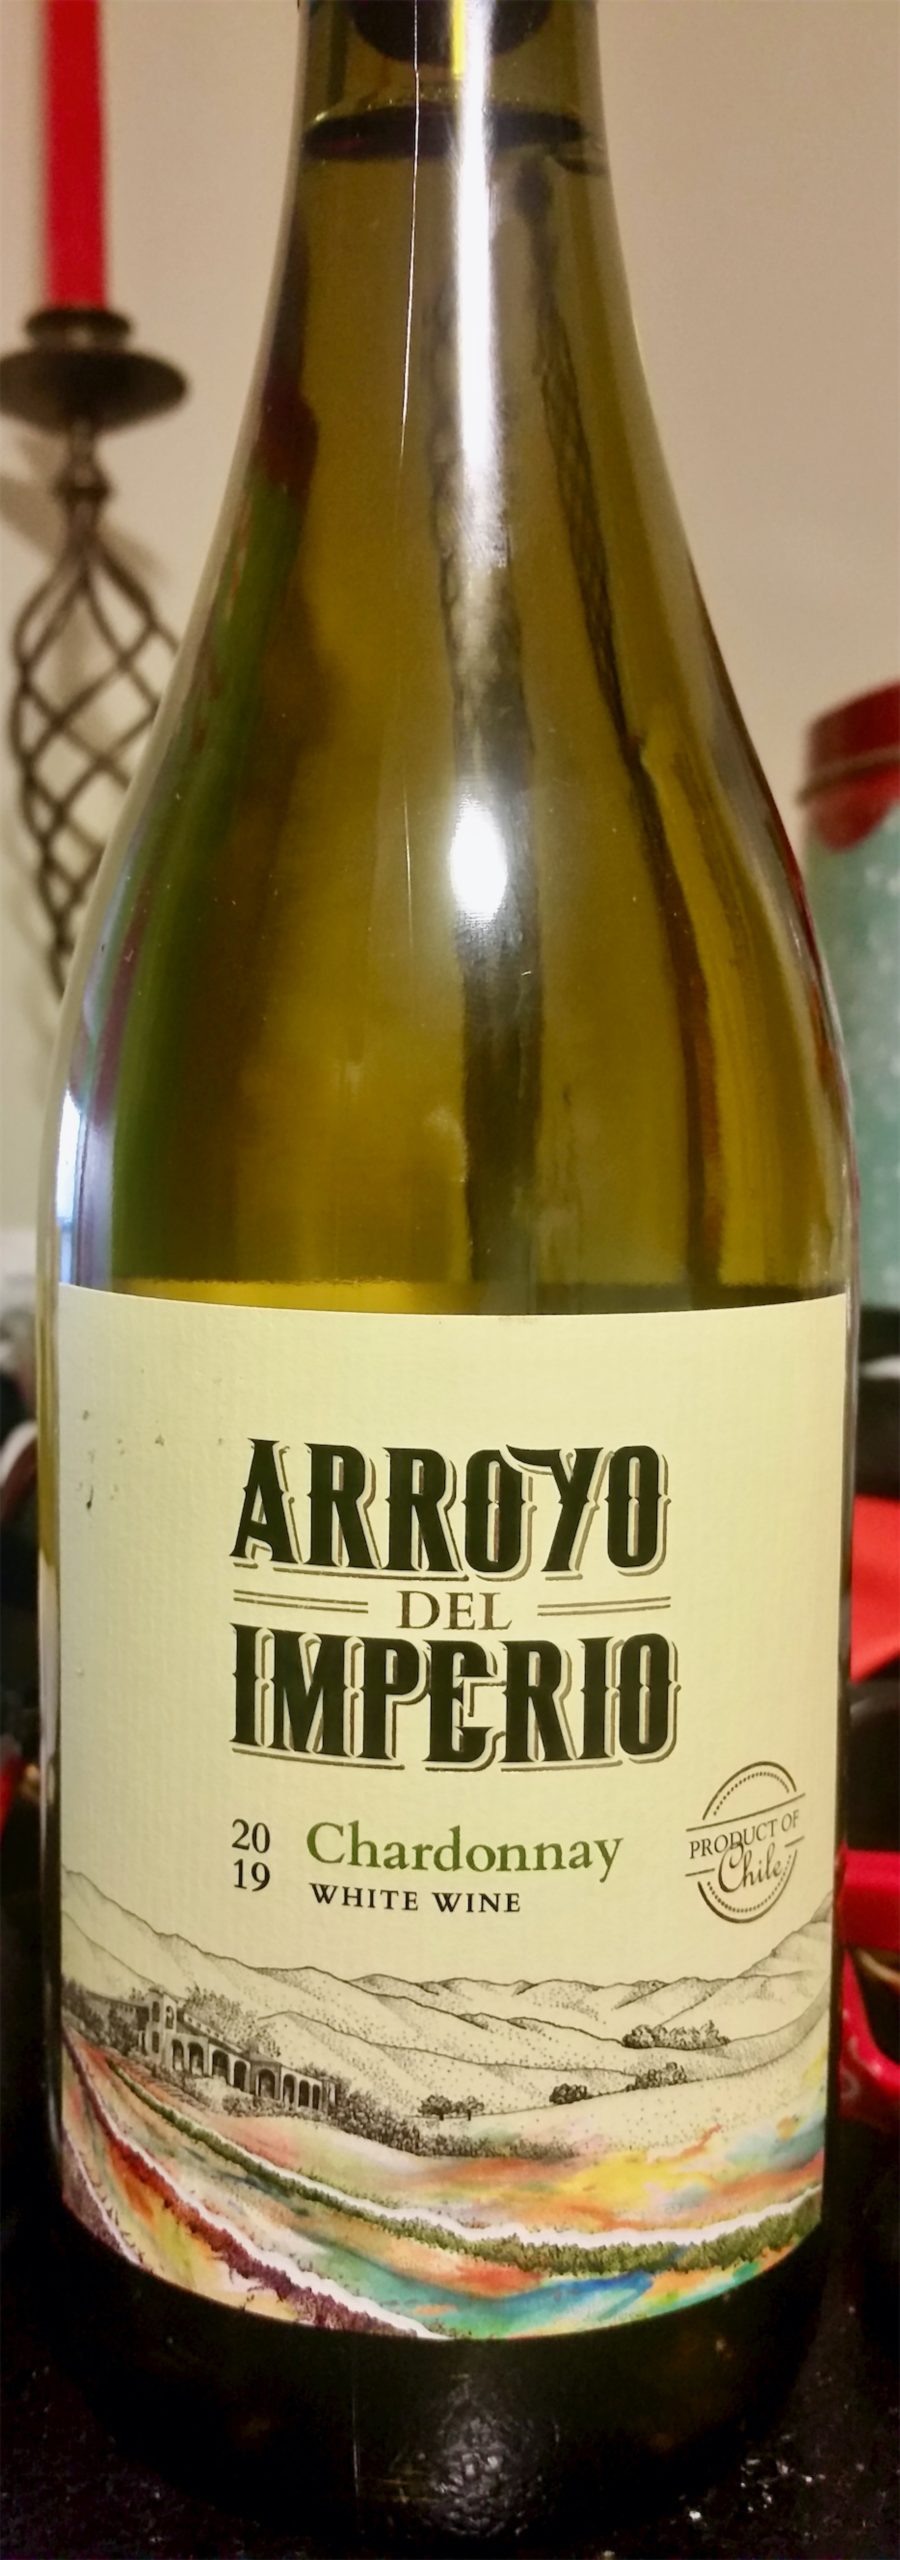 Arroyo del Imperio Chardonnay 2019